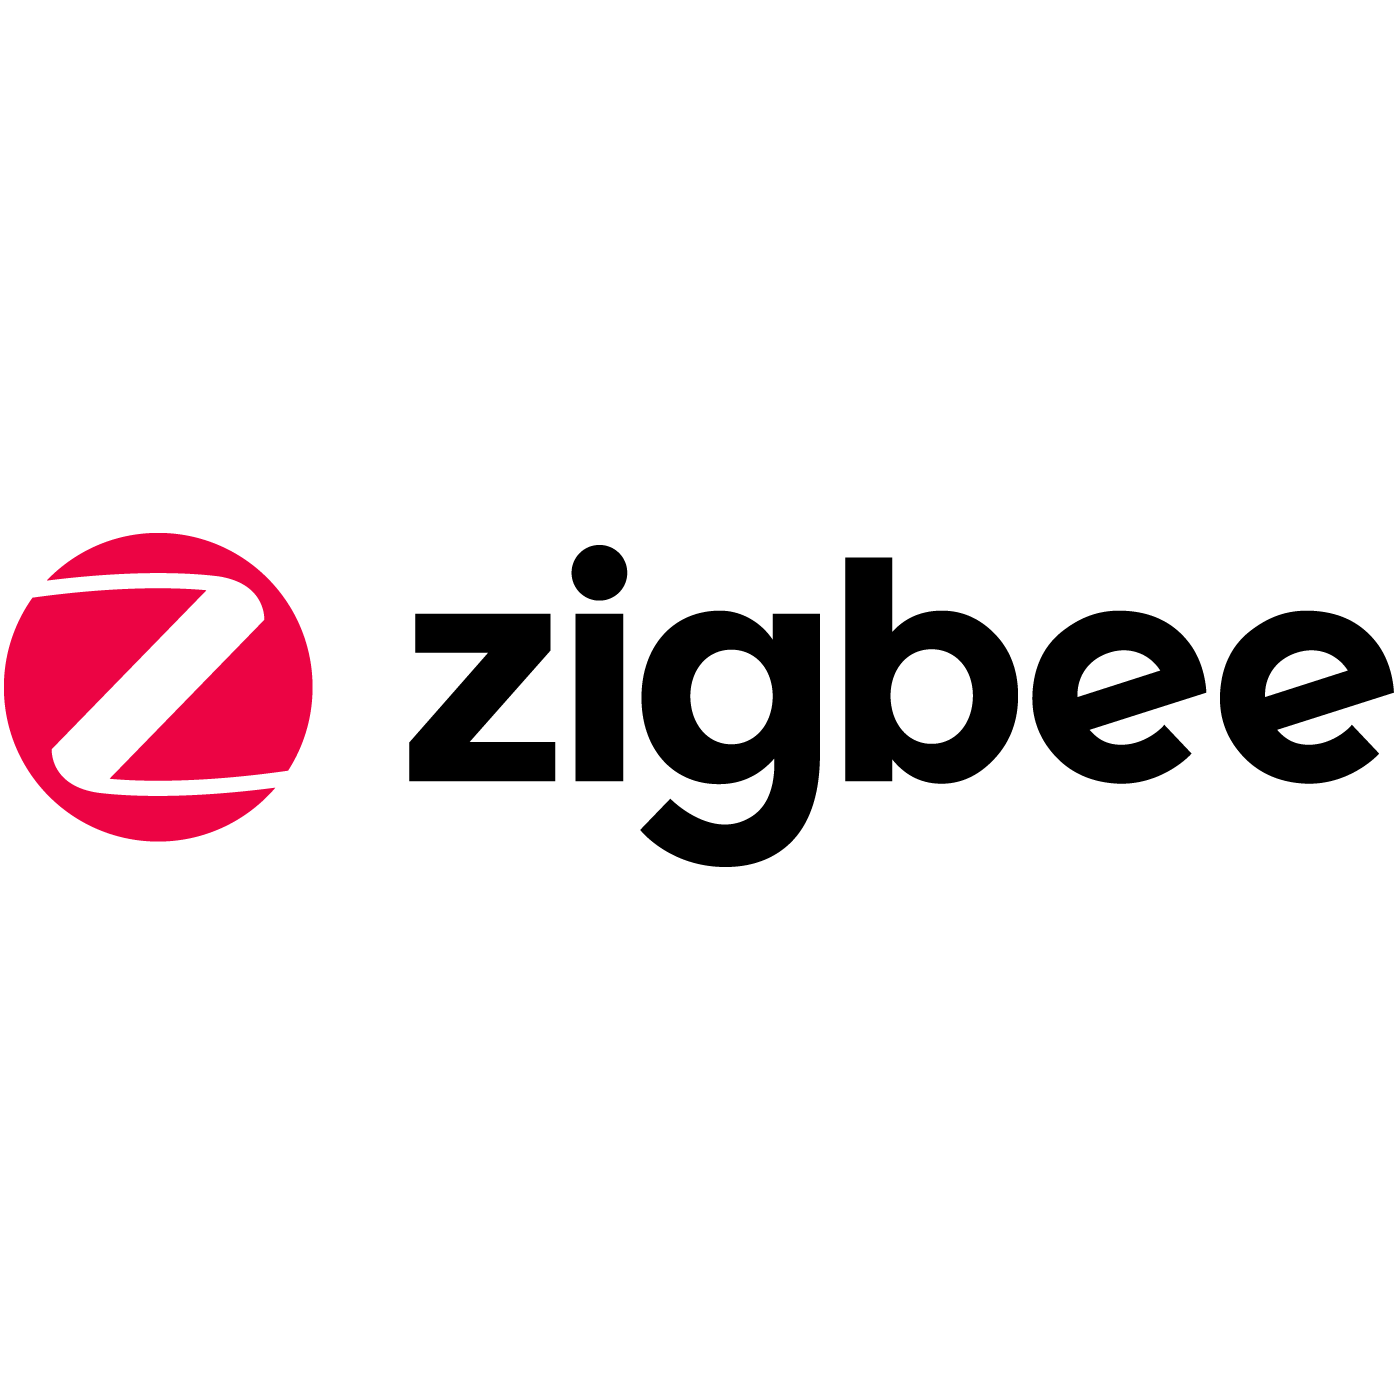 ZigBee Logo - ZigBee Alliance - Halberd Bastion